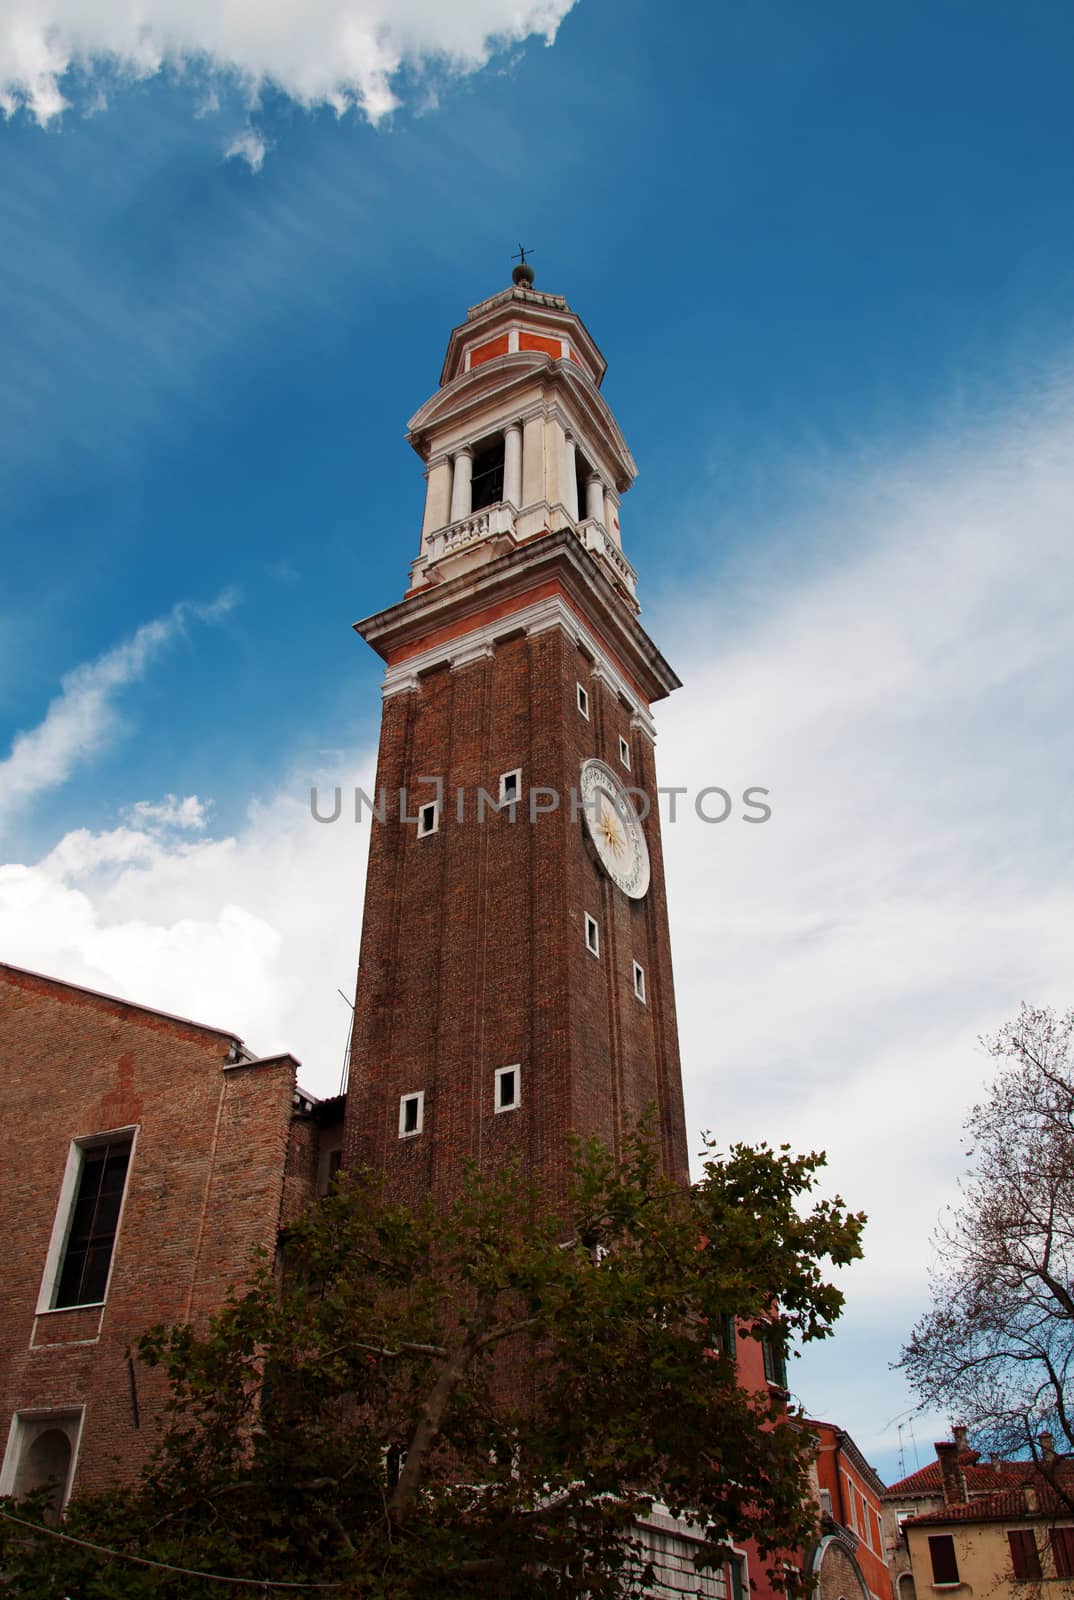 Venice Clock tower by tony4urban